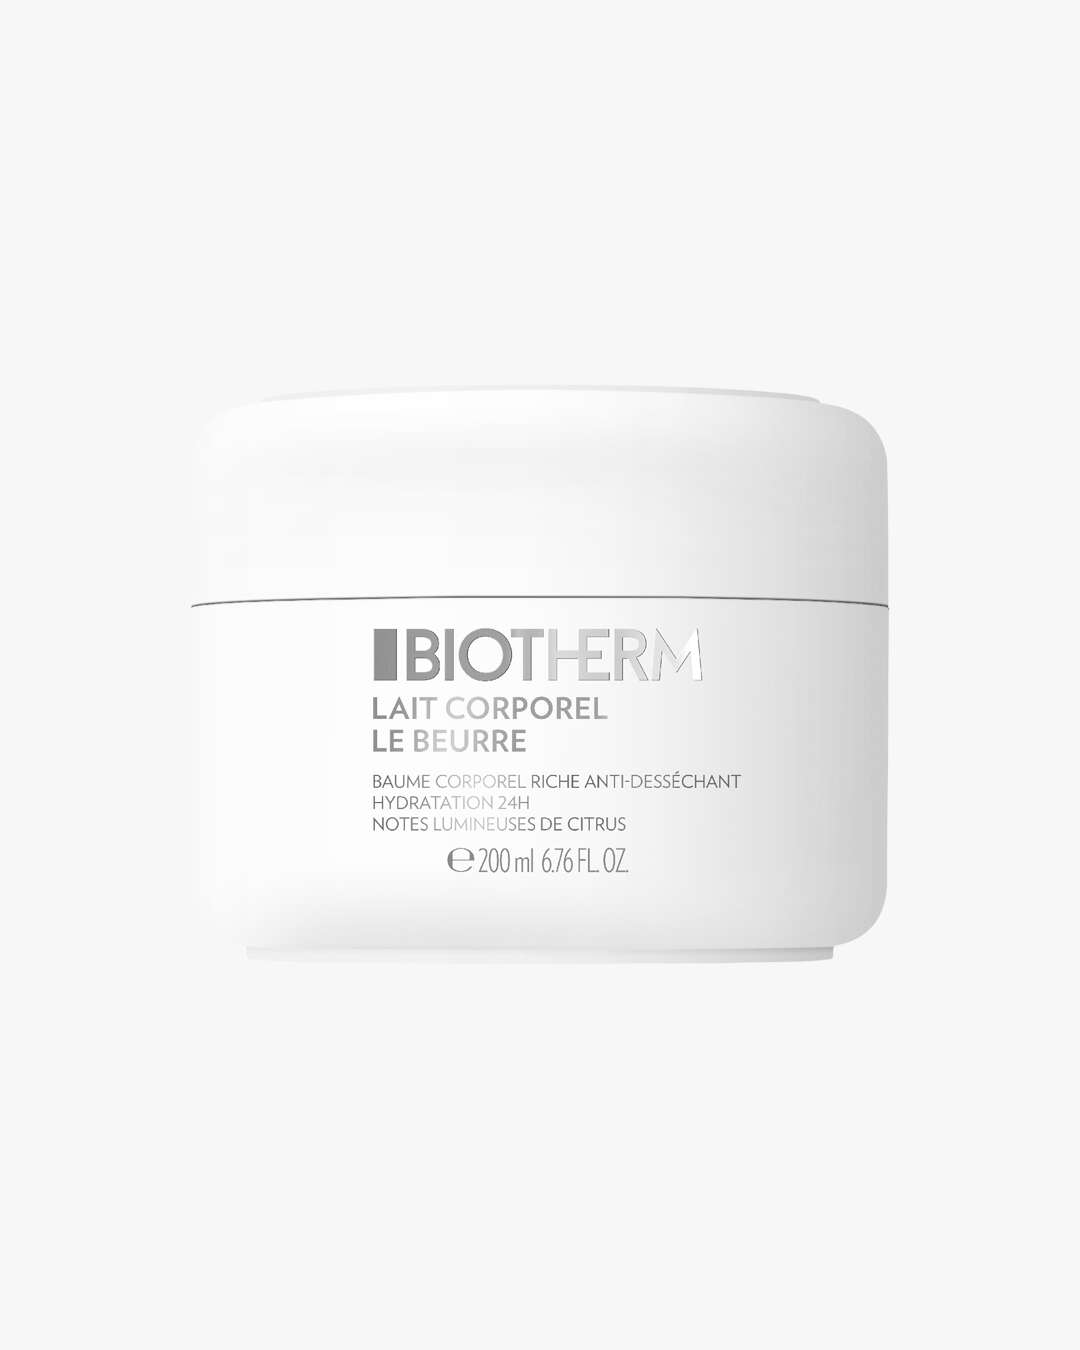 Beurre Corporel Body Cream 200 ml